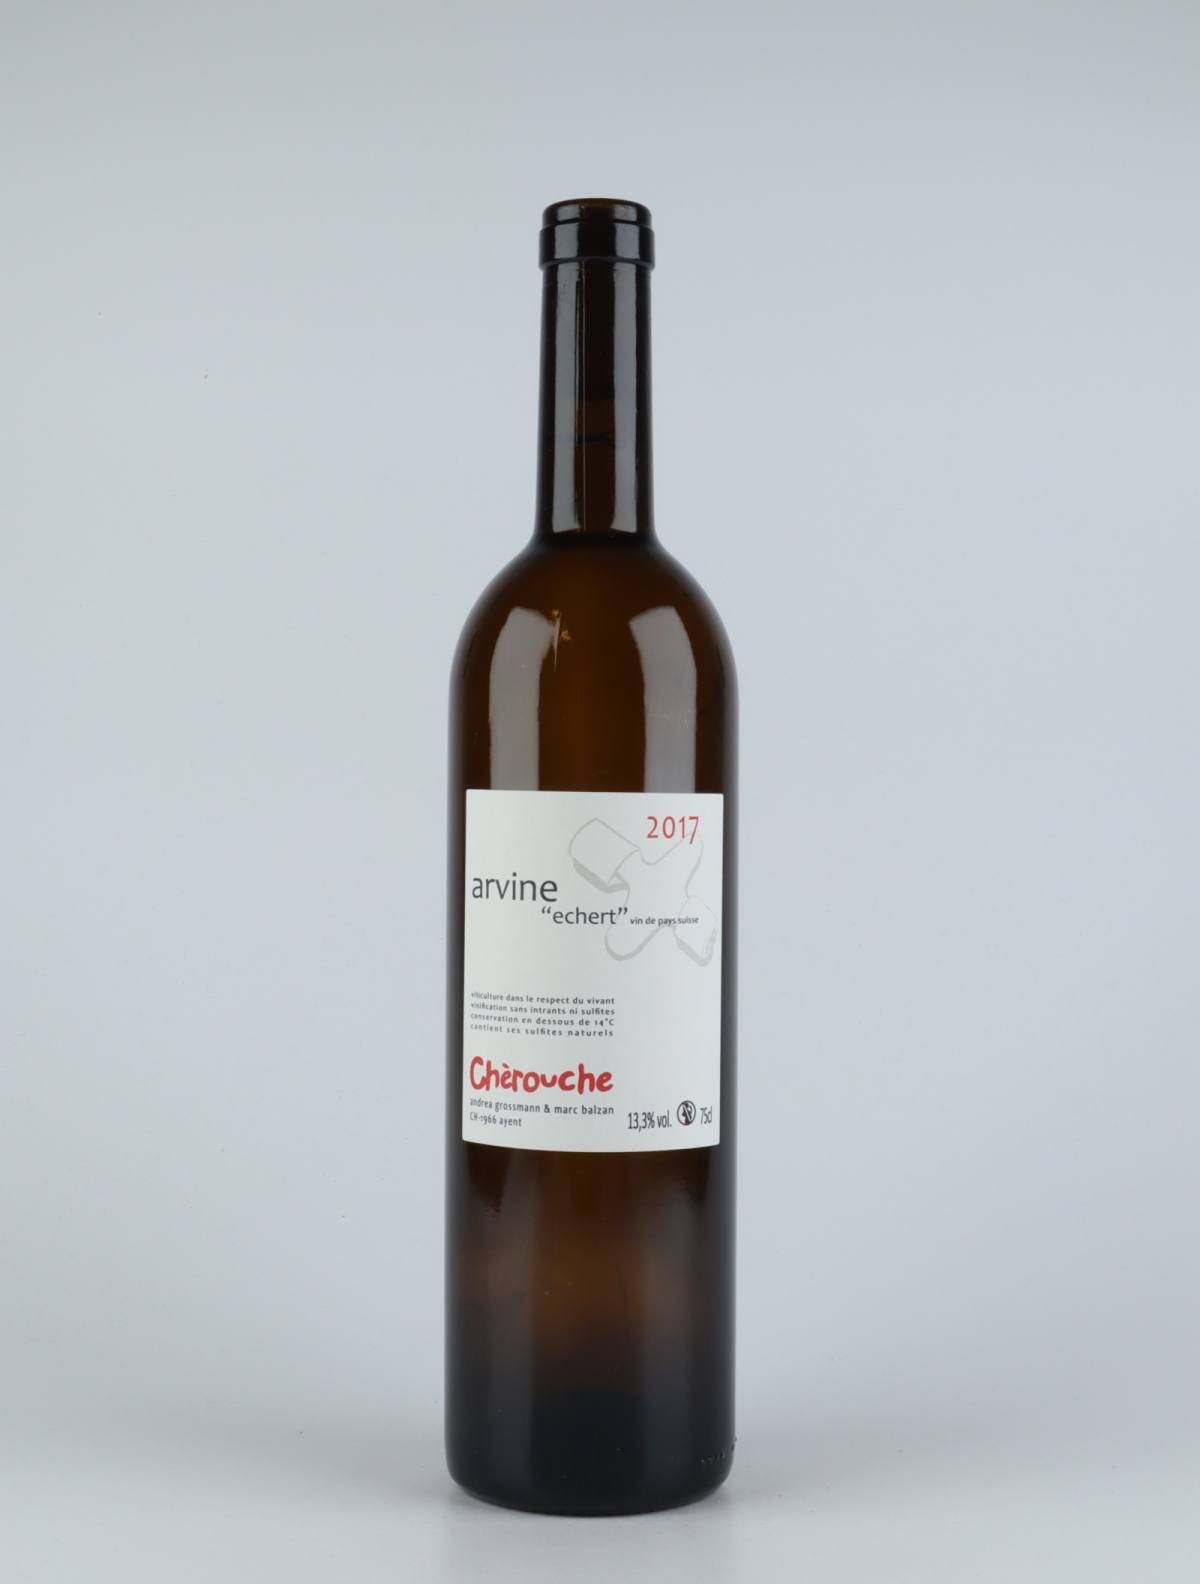 A bottle 2017 Arvine White wine from Chèrouche, Valais in Switzerland